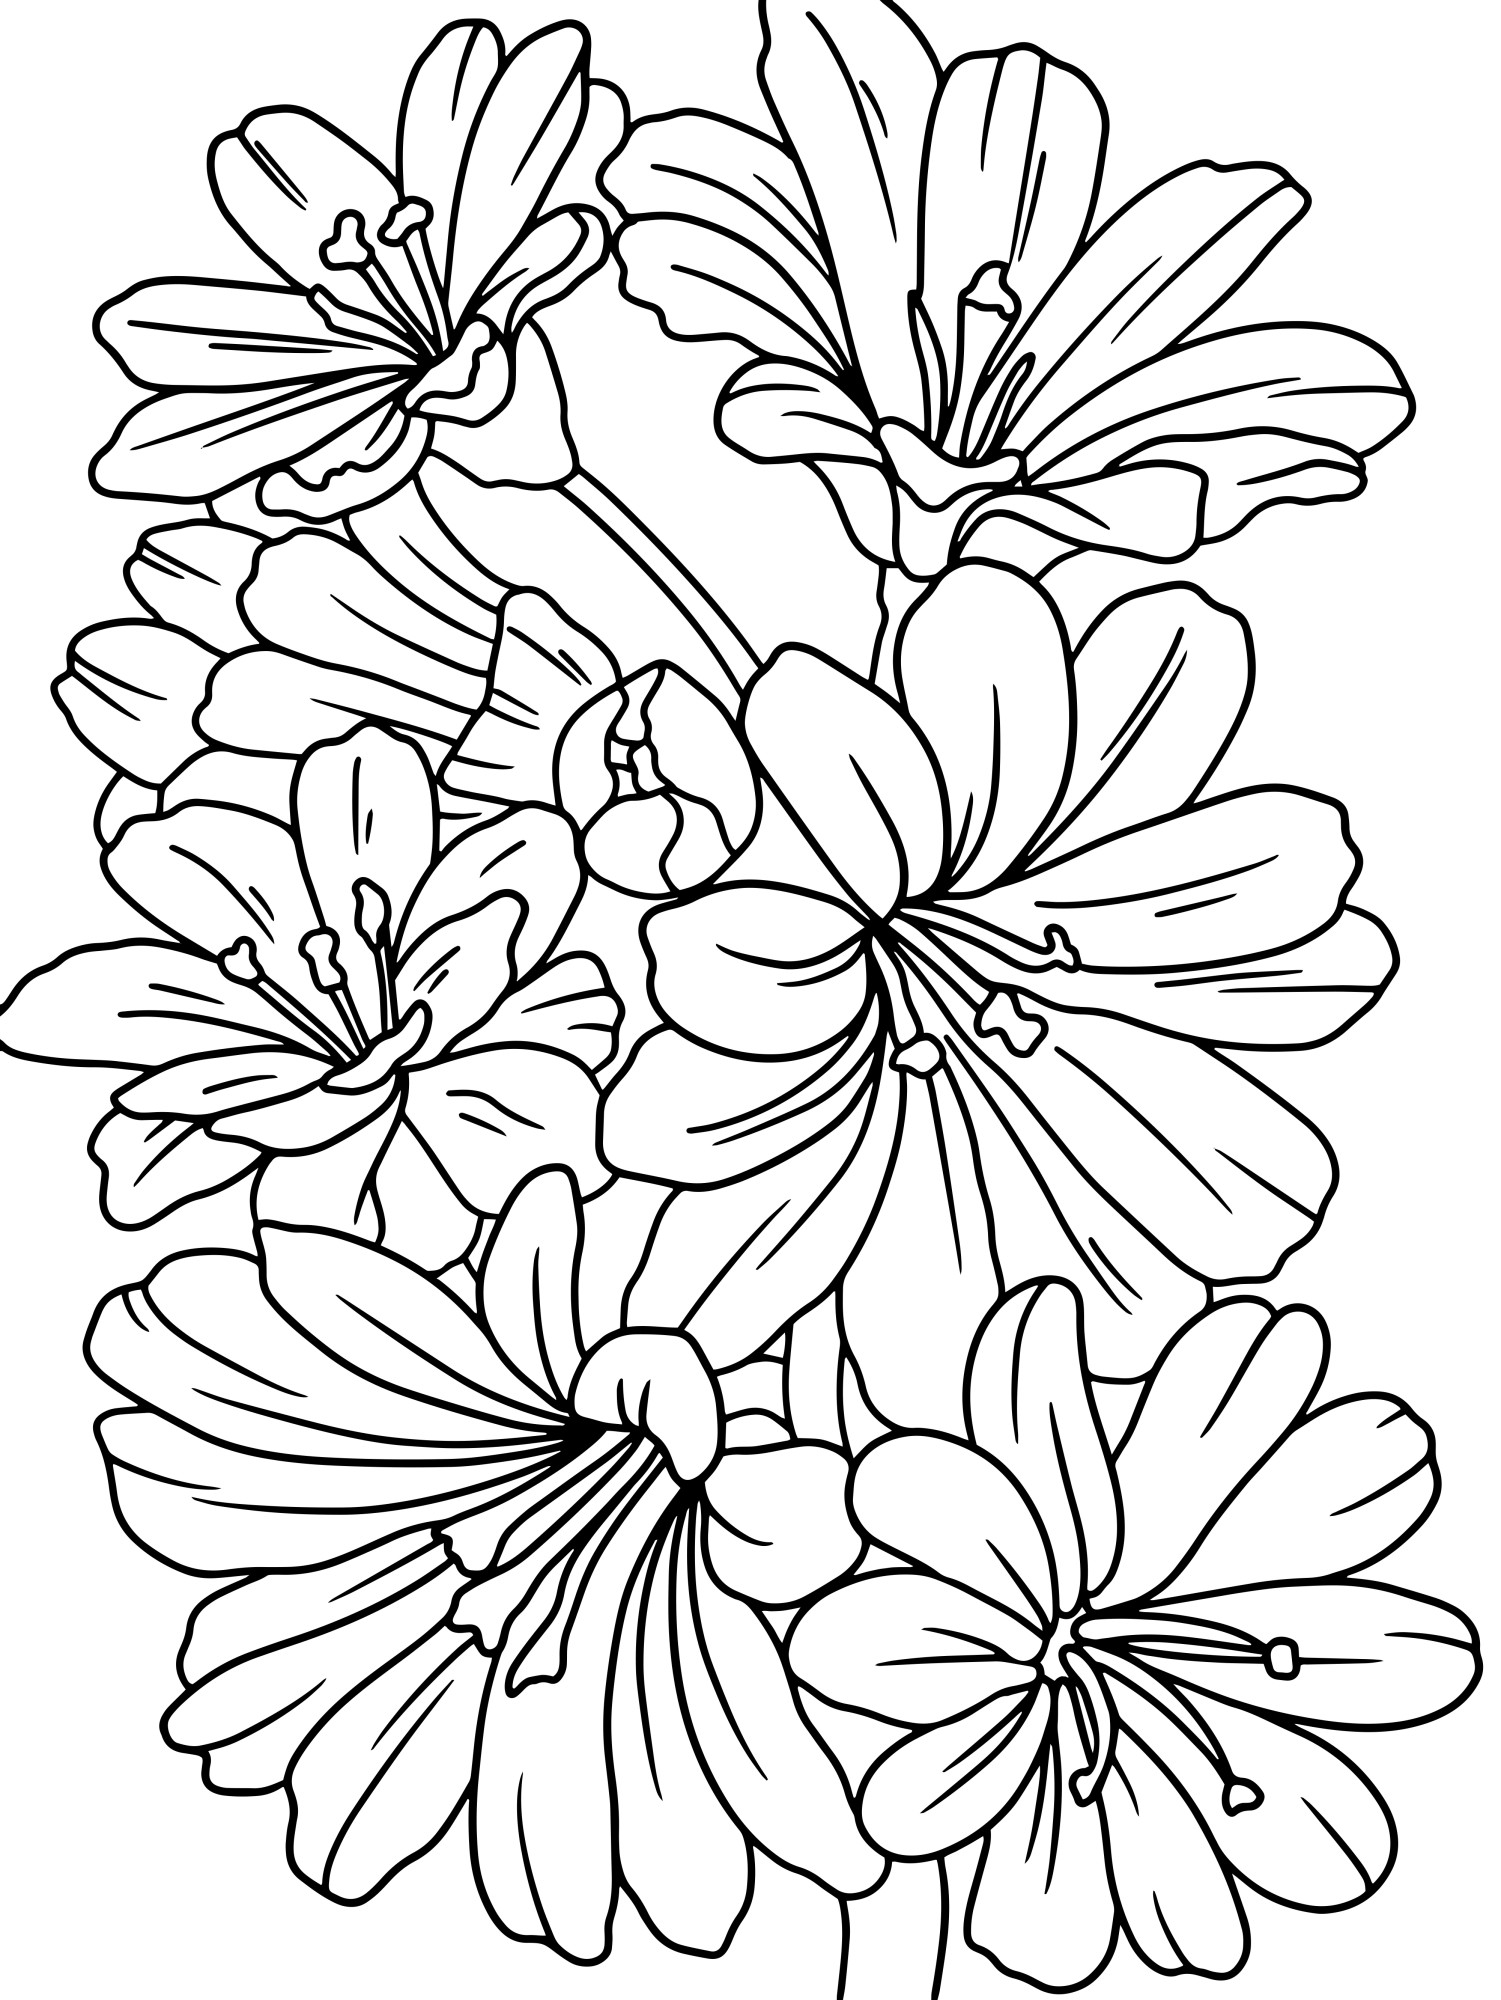 Раскраска для детей: цветок анемона